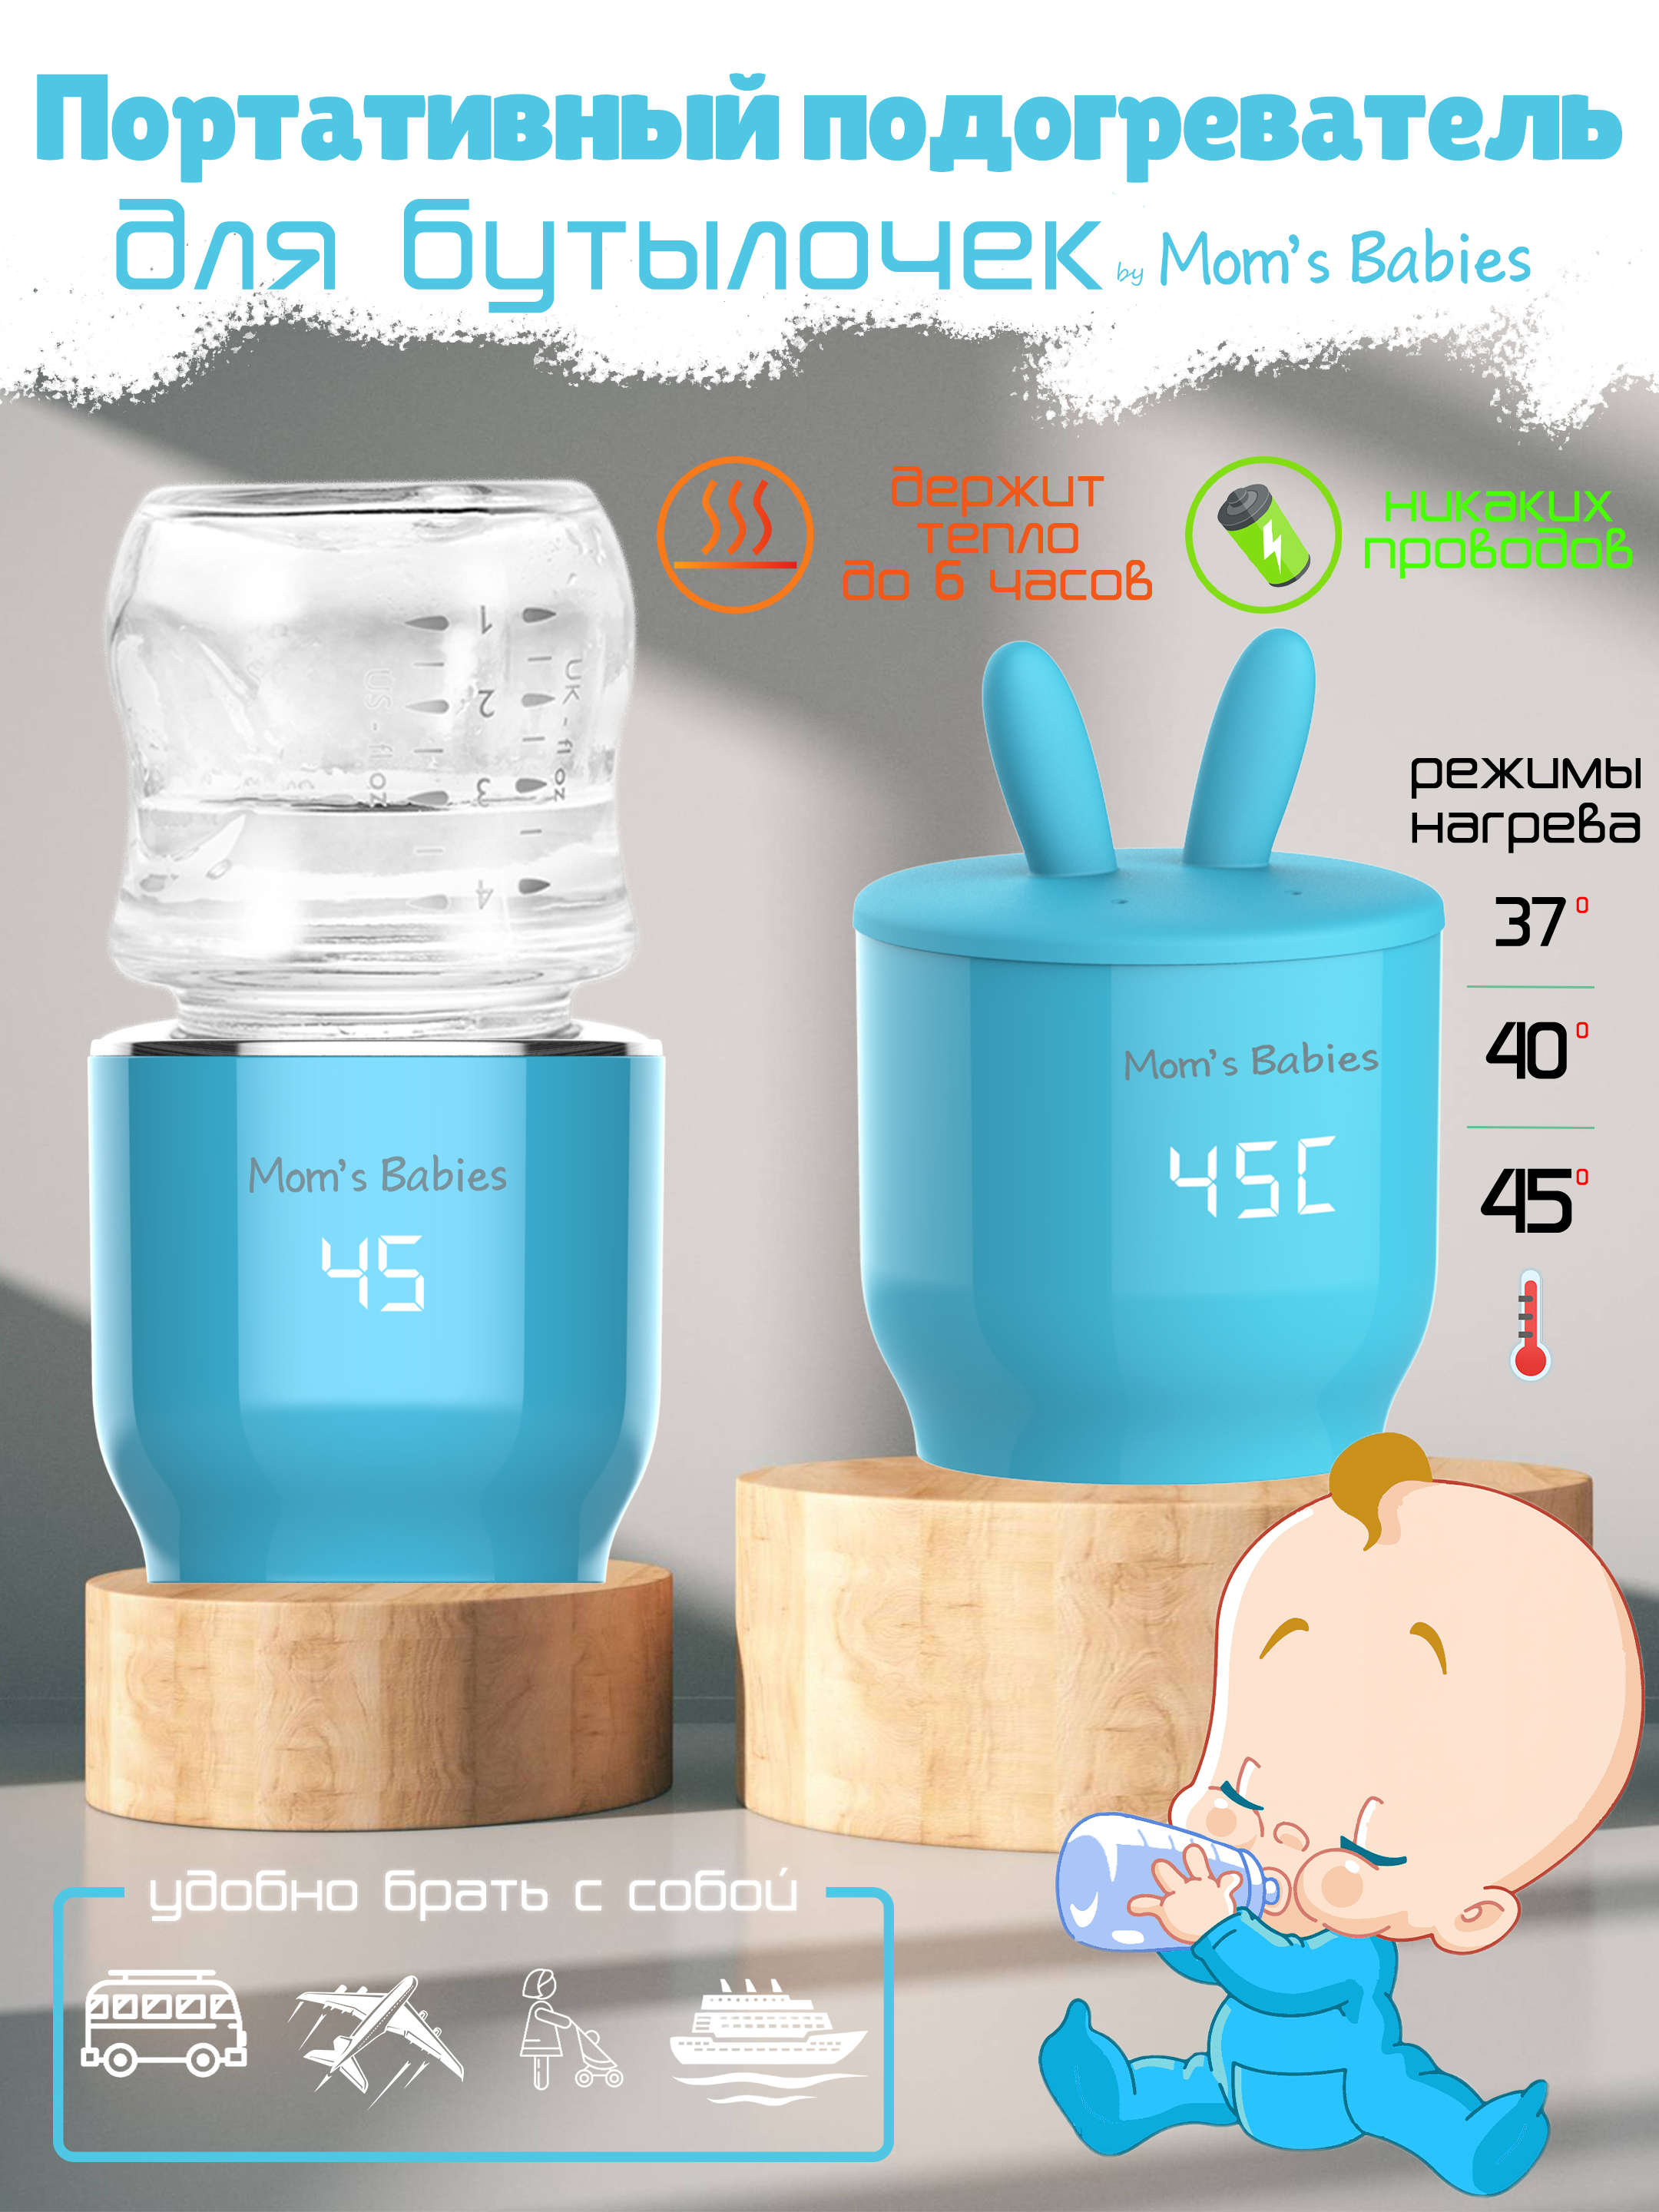 Портативный подогреватель Mom's Babies FS01 для бутылочек и детского питания голубой